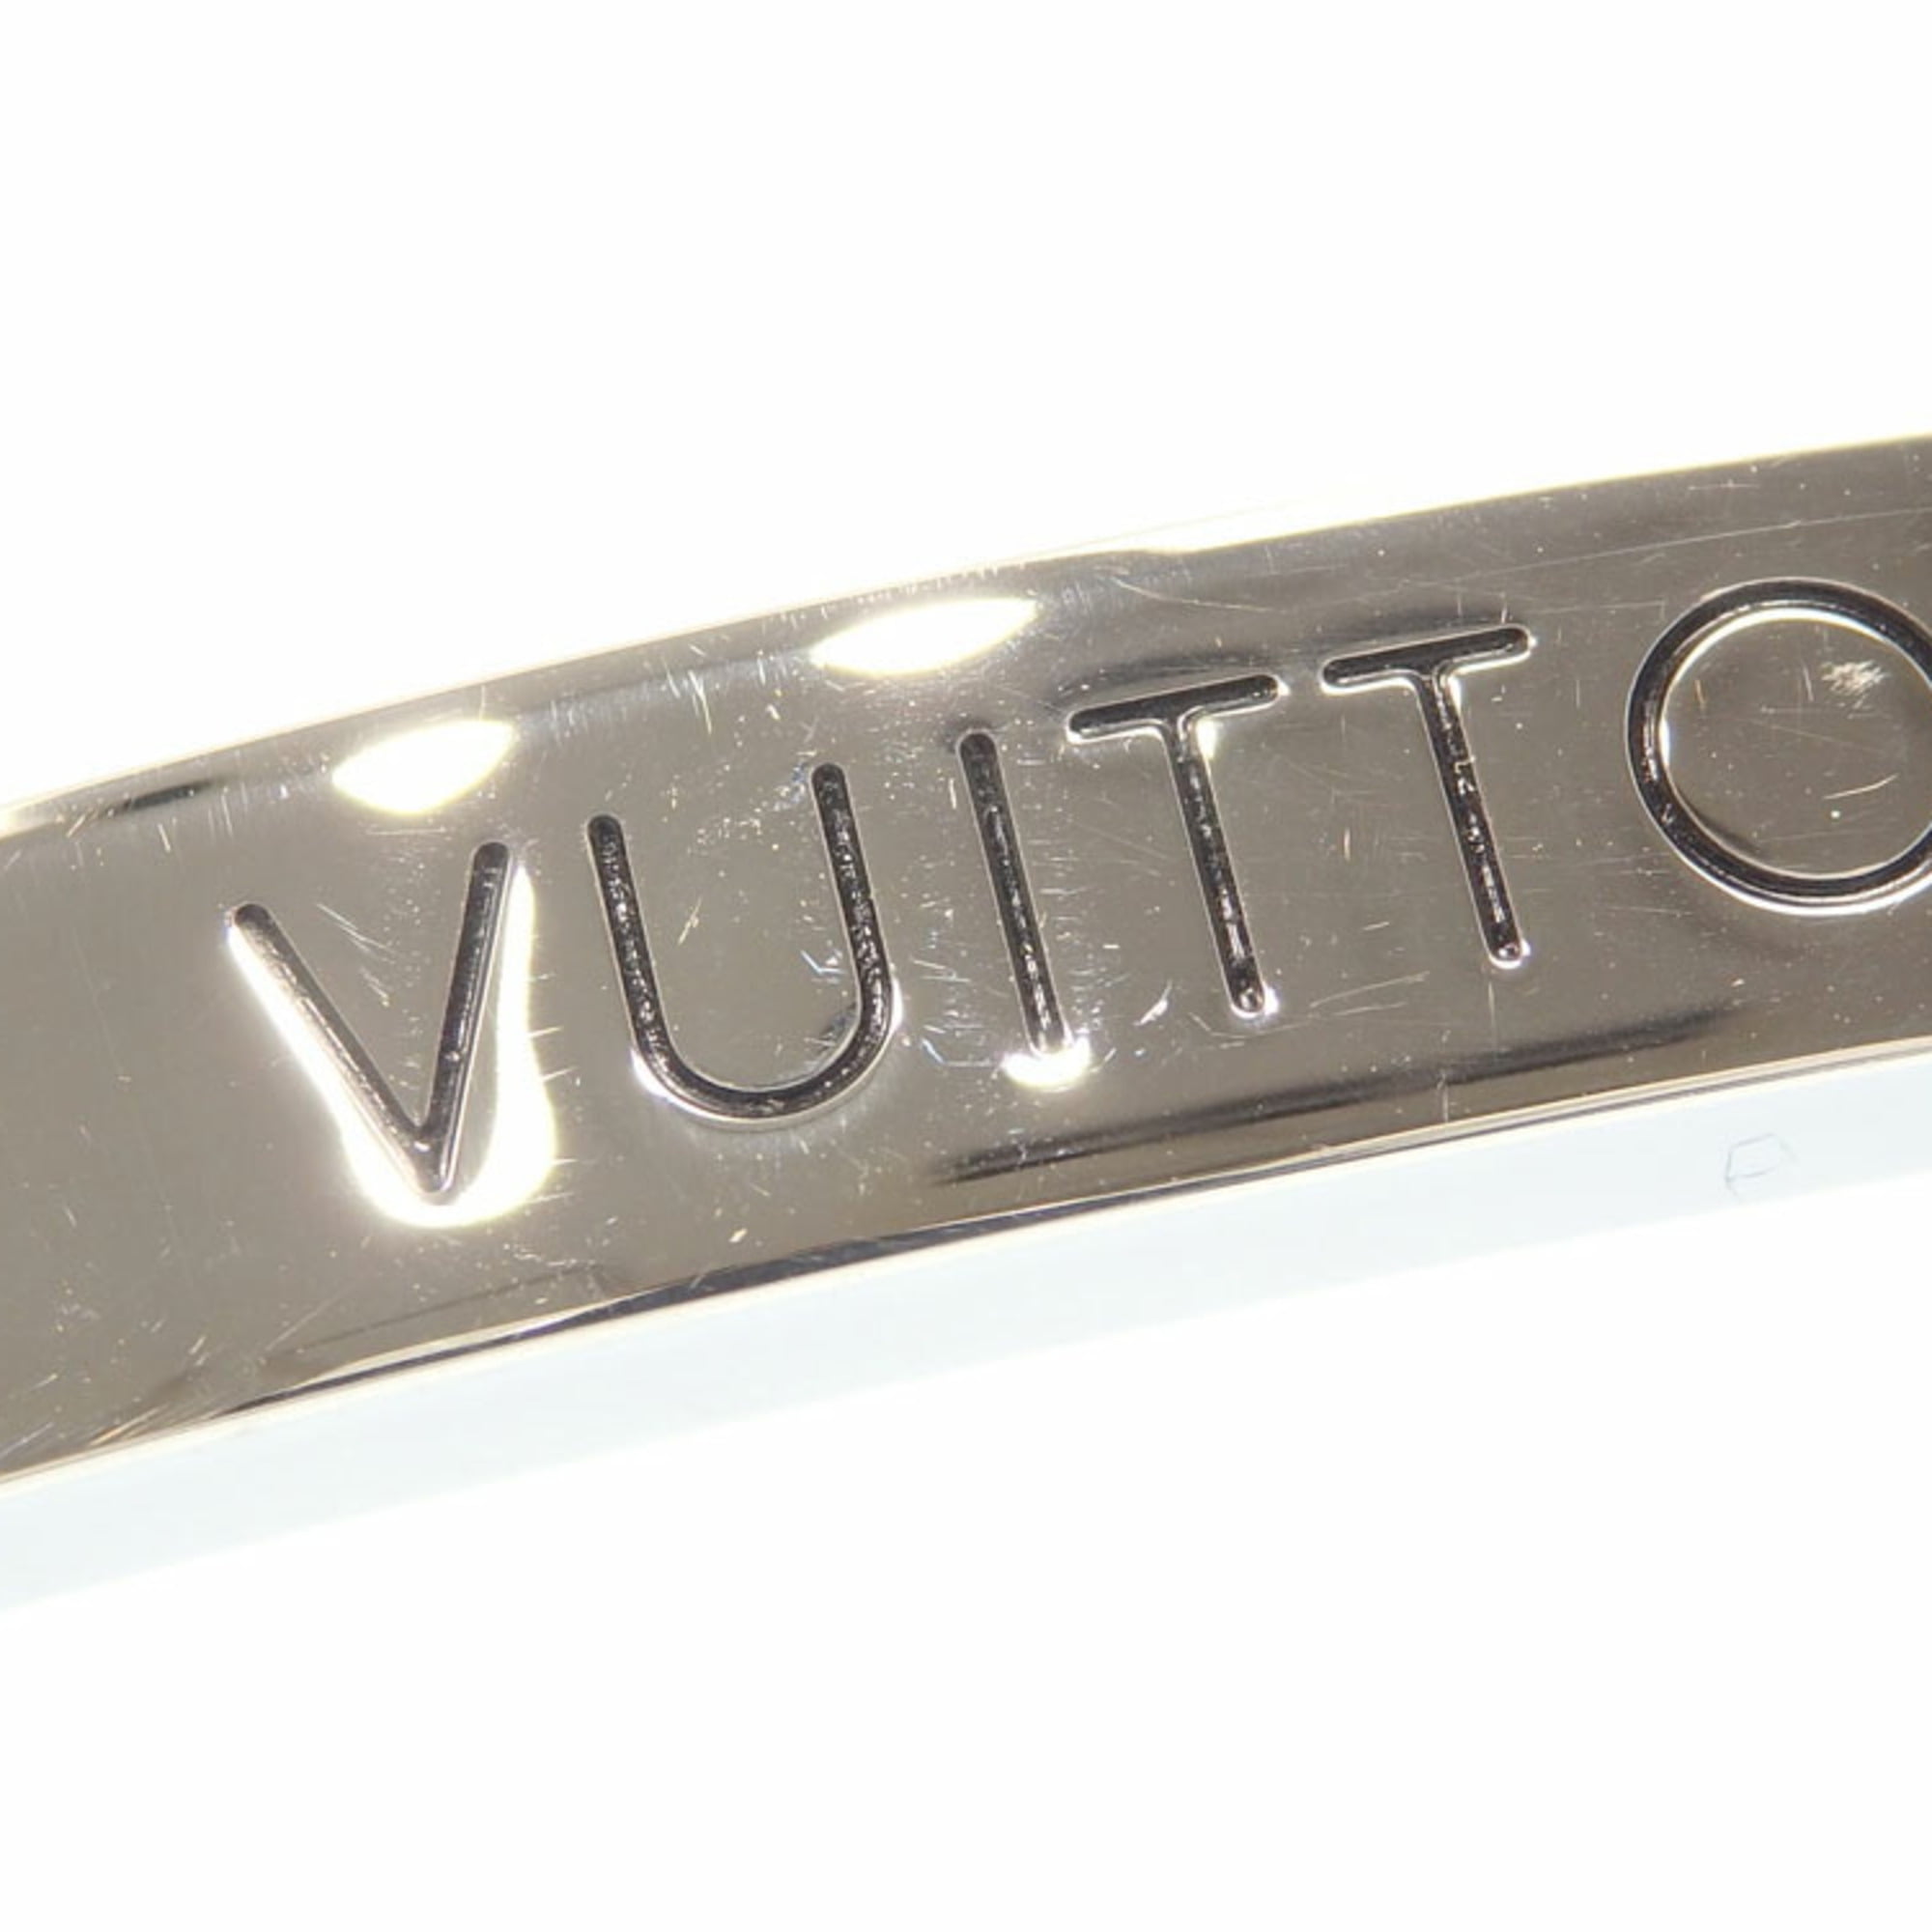 Louis Vuitton Louis Vuitton Bracelet Black P14129 – NUIR VINTAGE